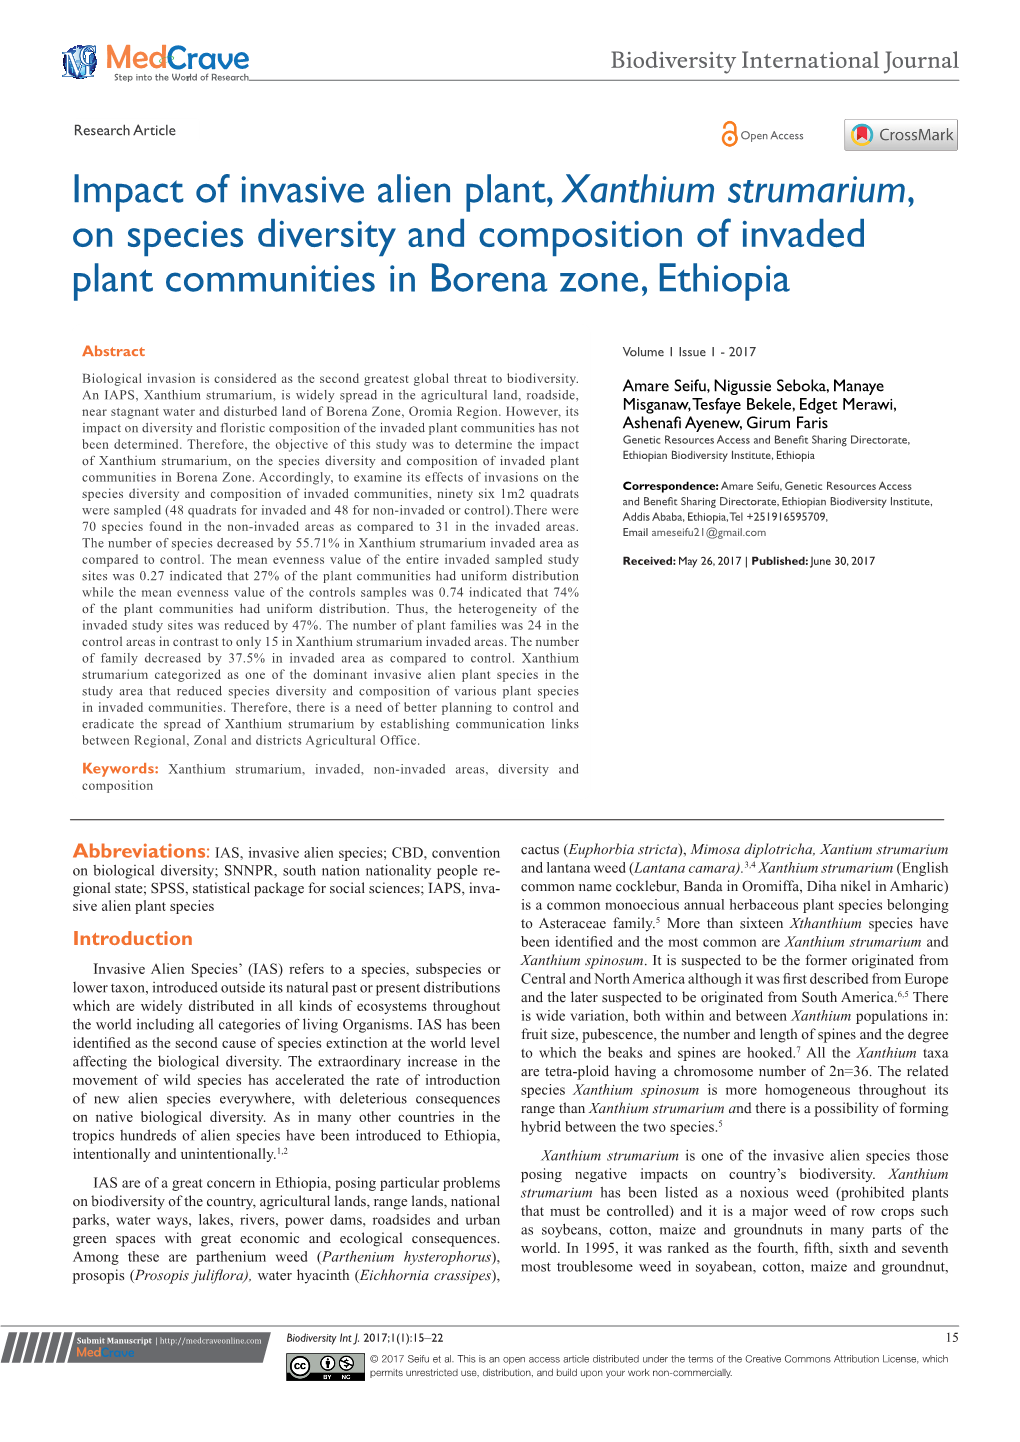 Xanthium Strumarium, on Species Diversity and Composition of Invaded Plant Communities in Borena Zone, Ethiopia